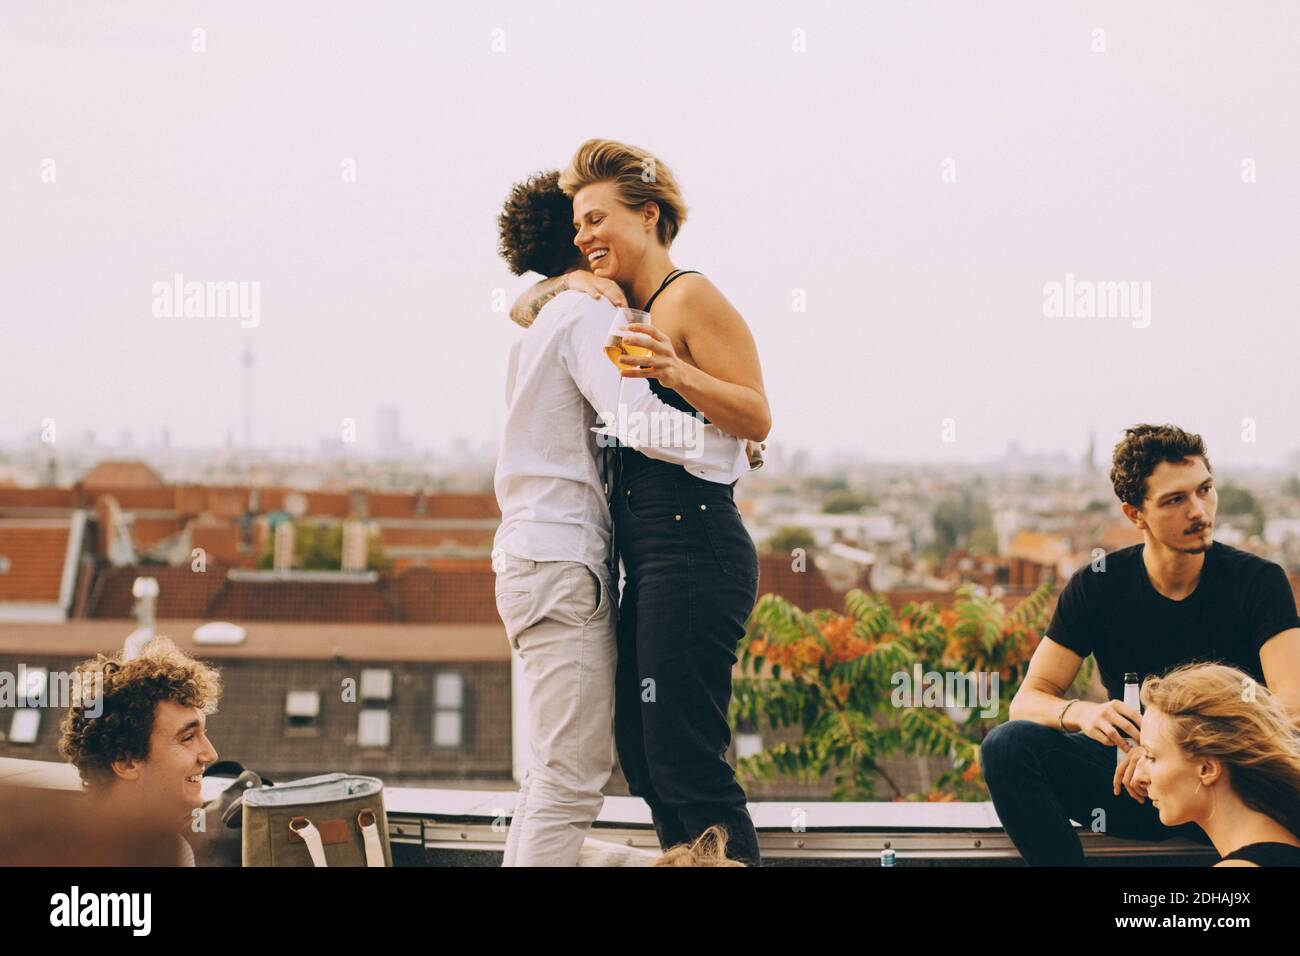 El hombre y la mujer abrazan mientras disfrutan de la fiesta con los amigos en terraza Foto de stock